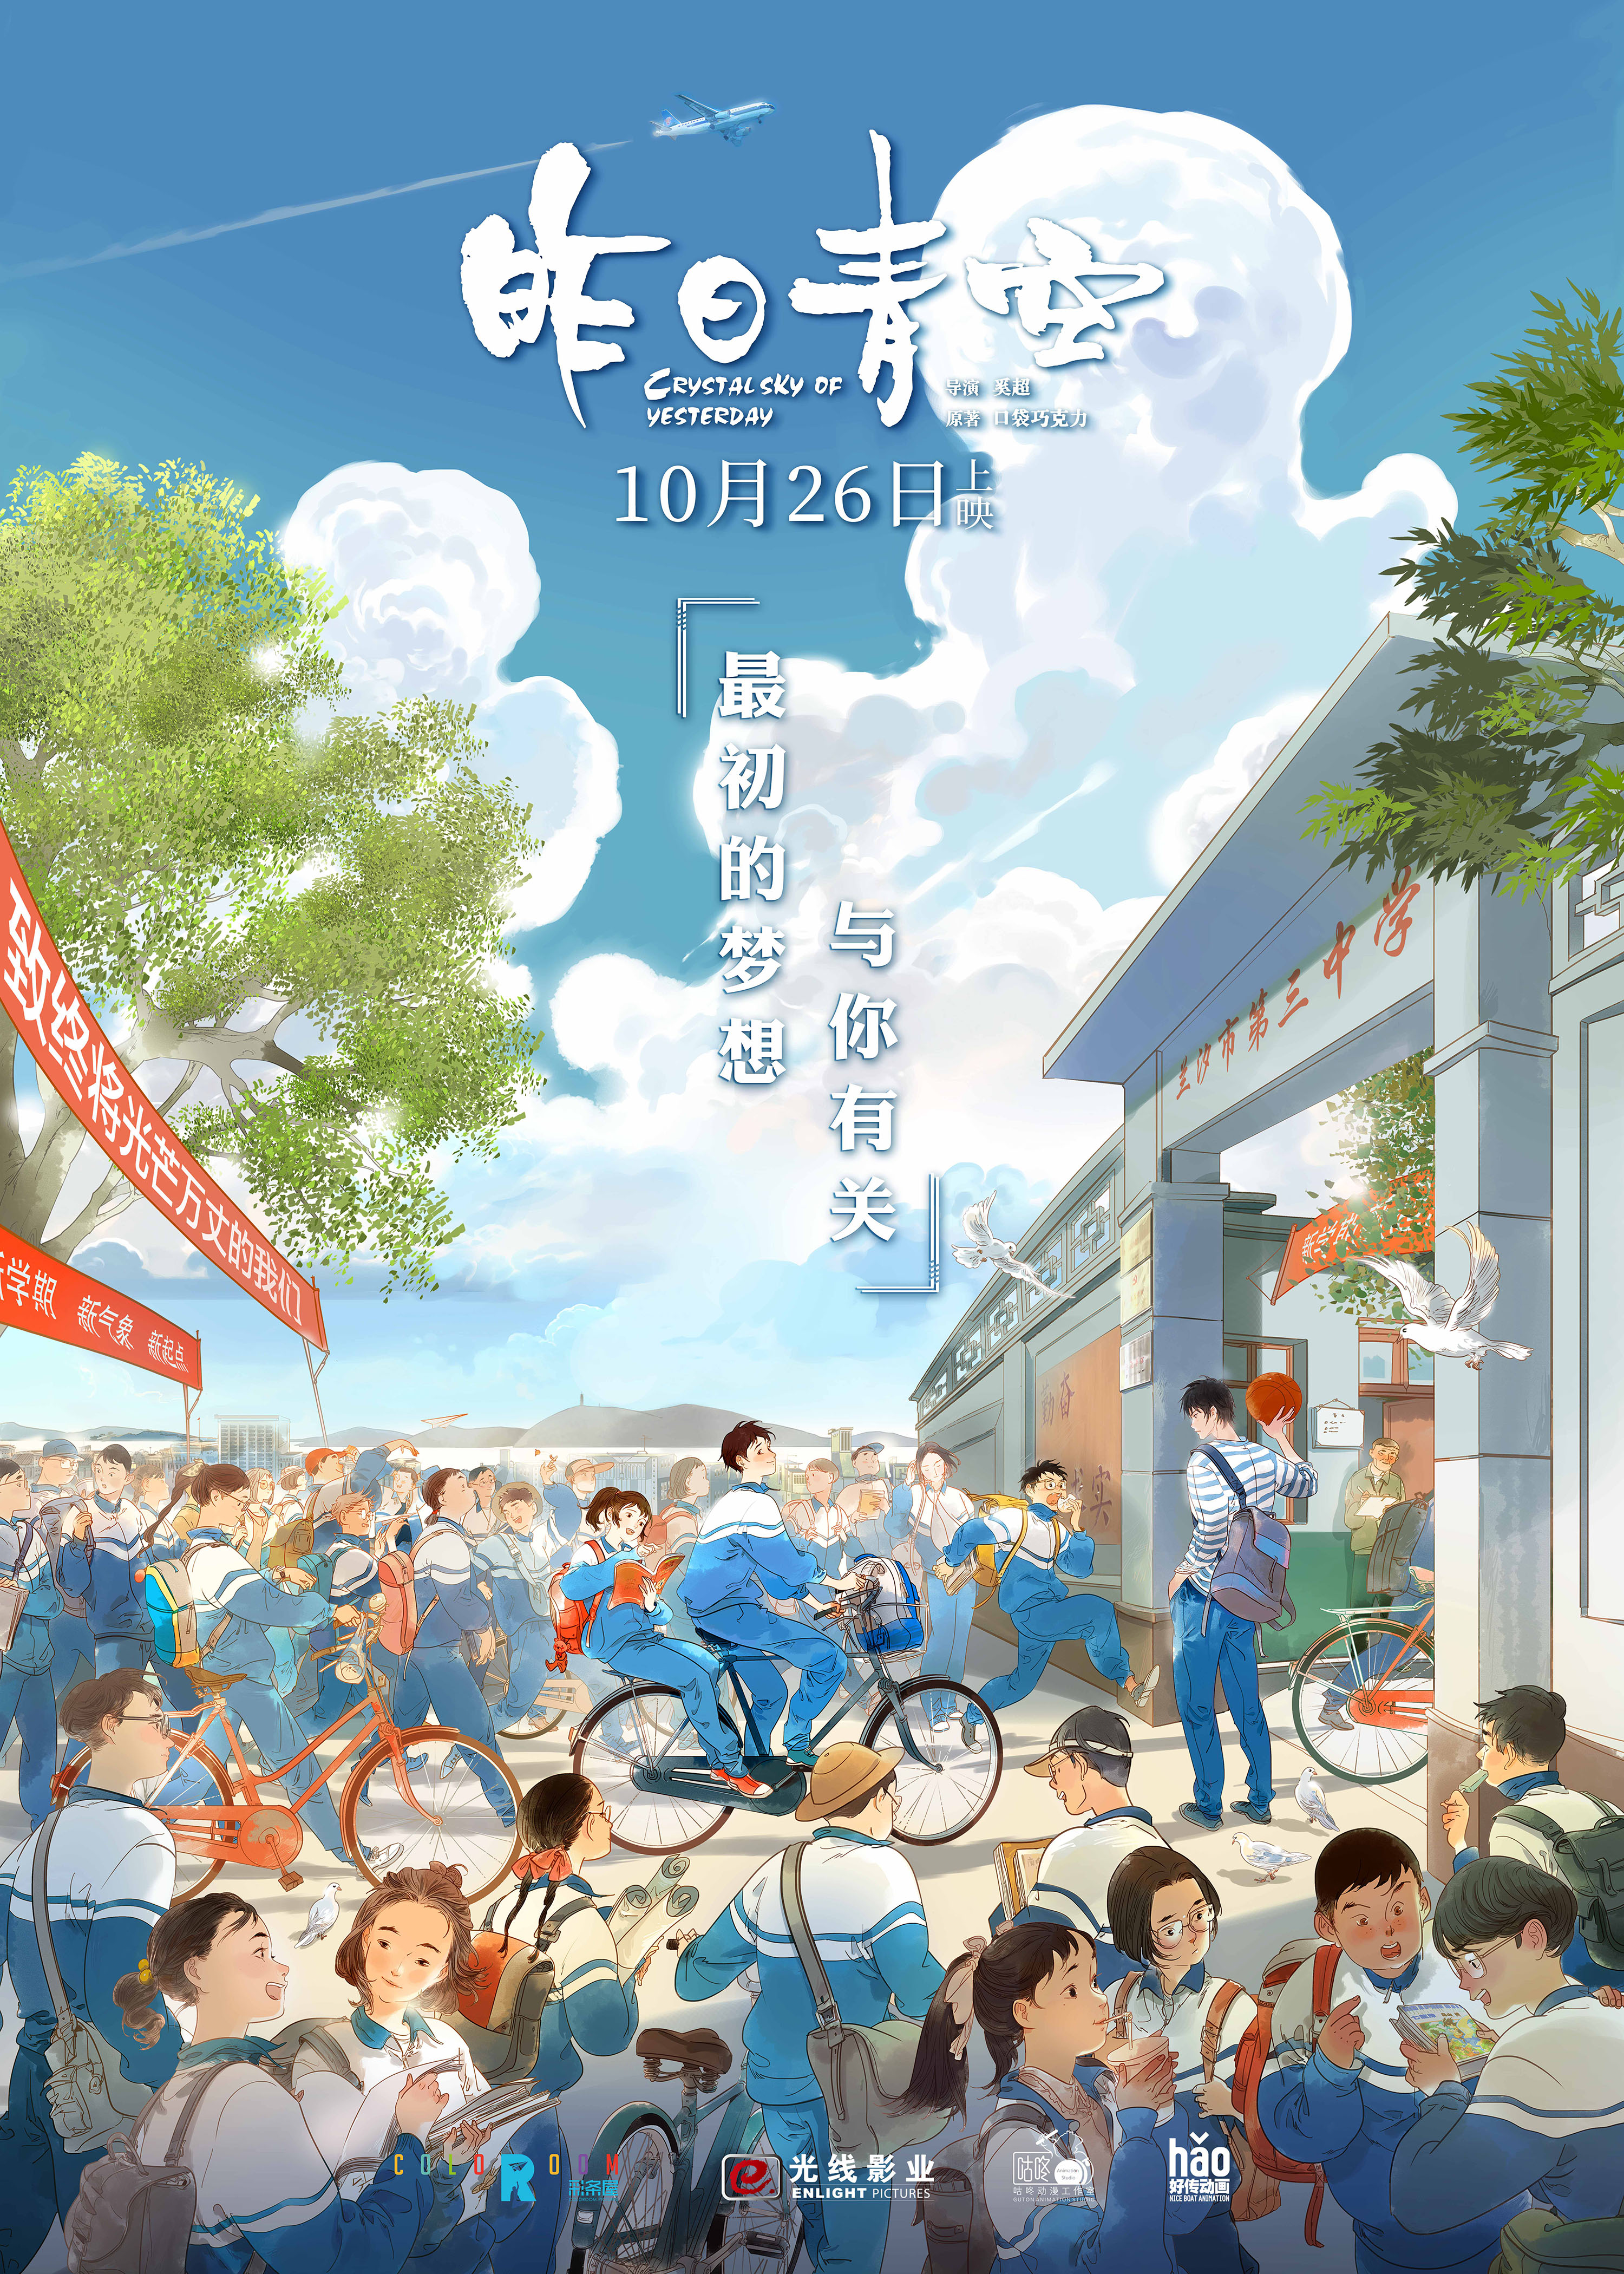 《昨日青空》改档10月26日 新海报展现中国校园风